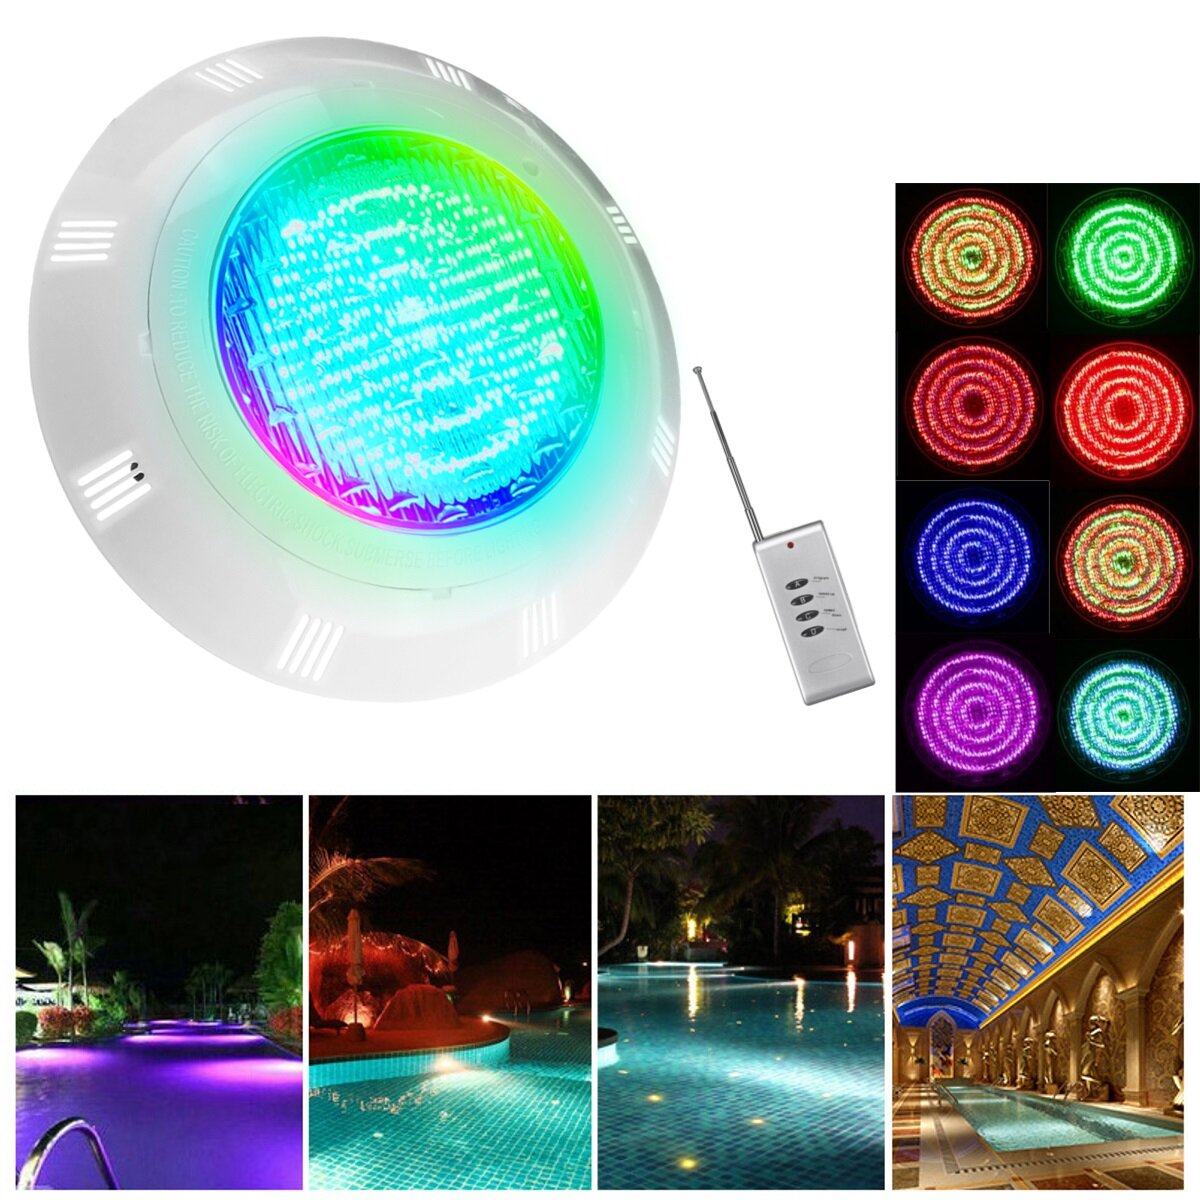 

15 Вт / 30 Вт для плавания Бассейн Свет RGB LED Подводная цветная подсветка для вазы с Дистанционное Управление